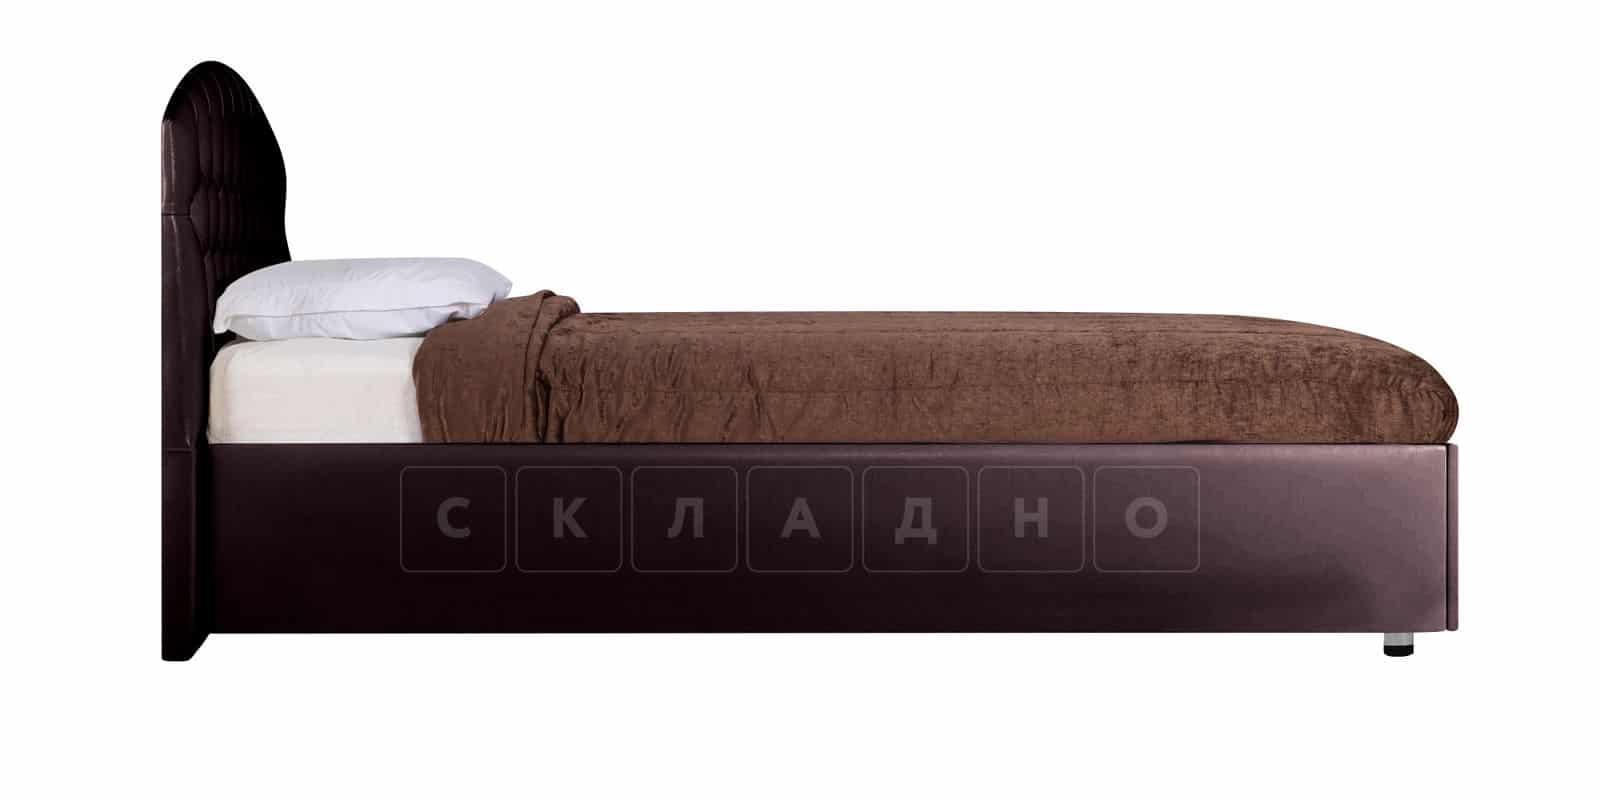 Мягкая кровать Малибу 160см экокожа шоколадного цвета вариант 1 фото 5 | интернет-магазин Складно